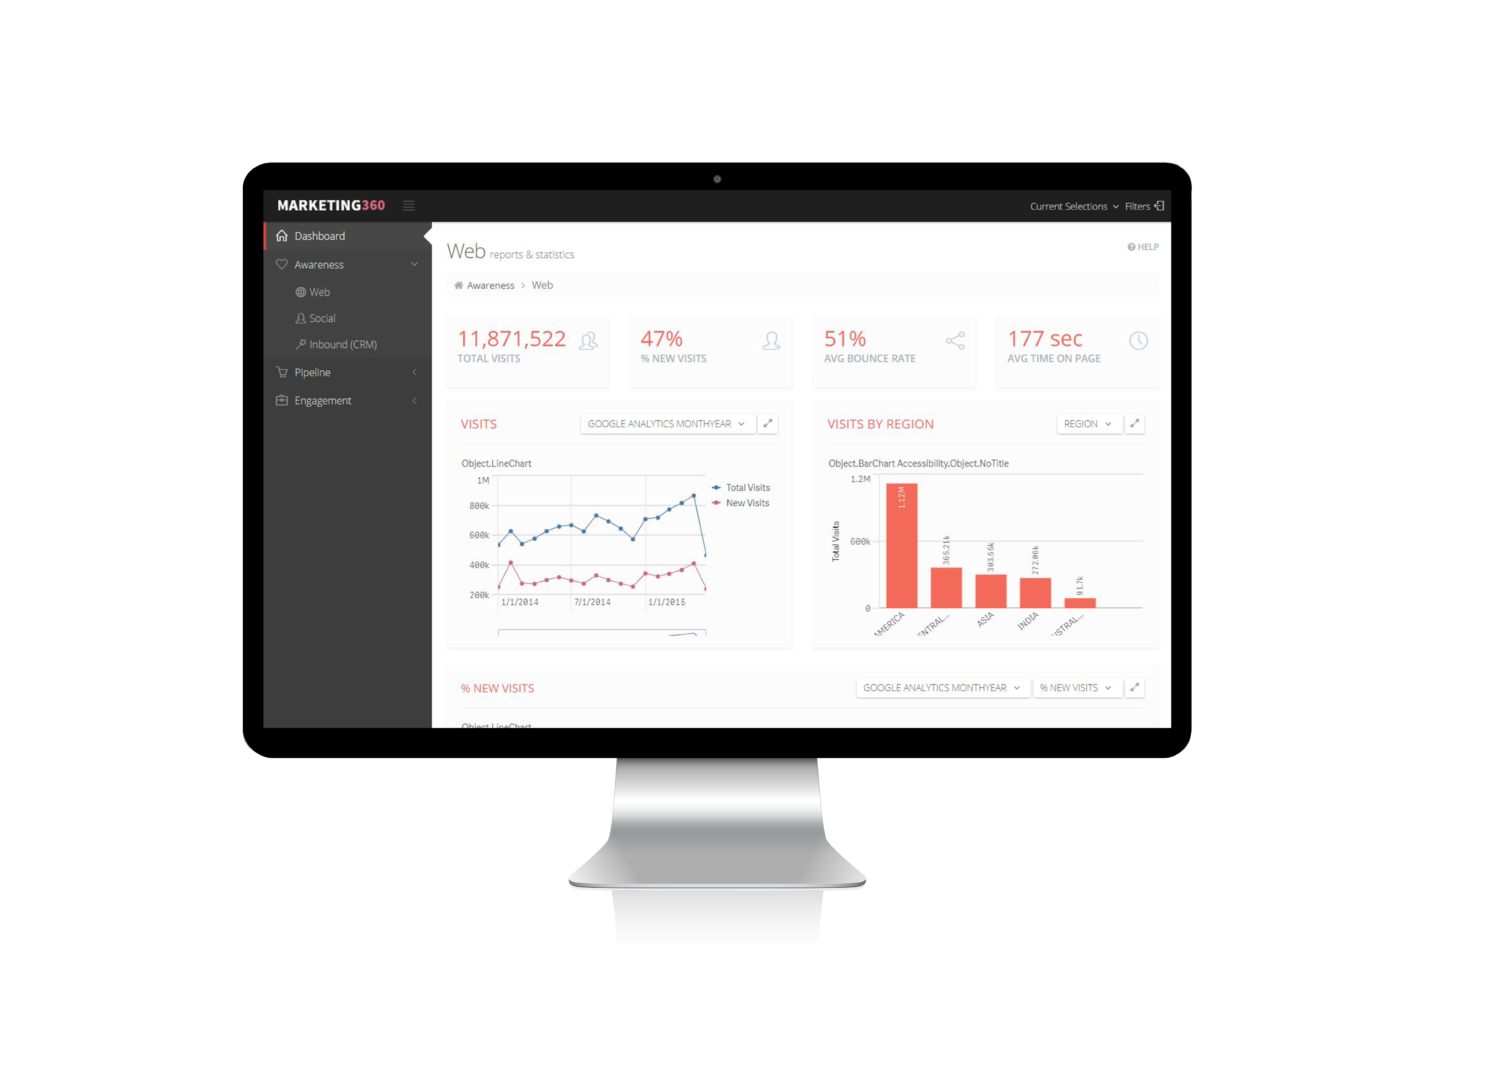 Qlik Sense dashboard showing marketing analysis